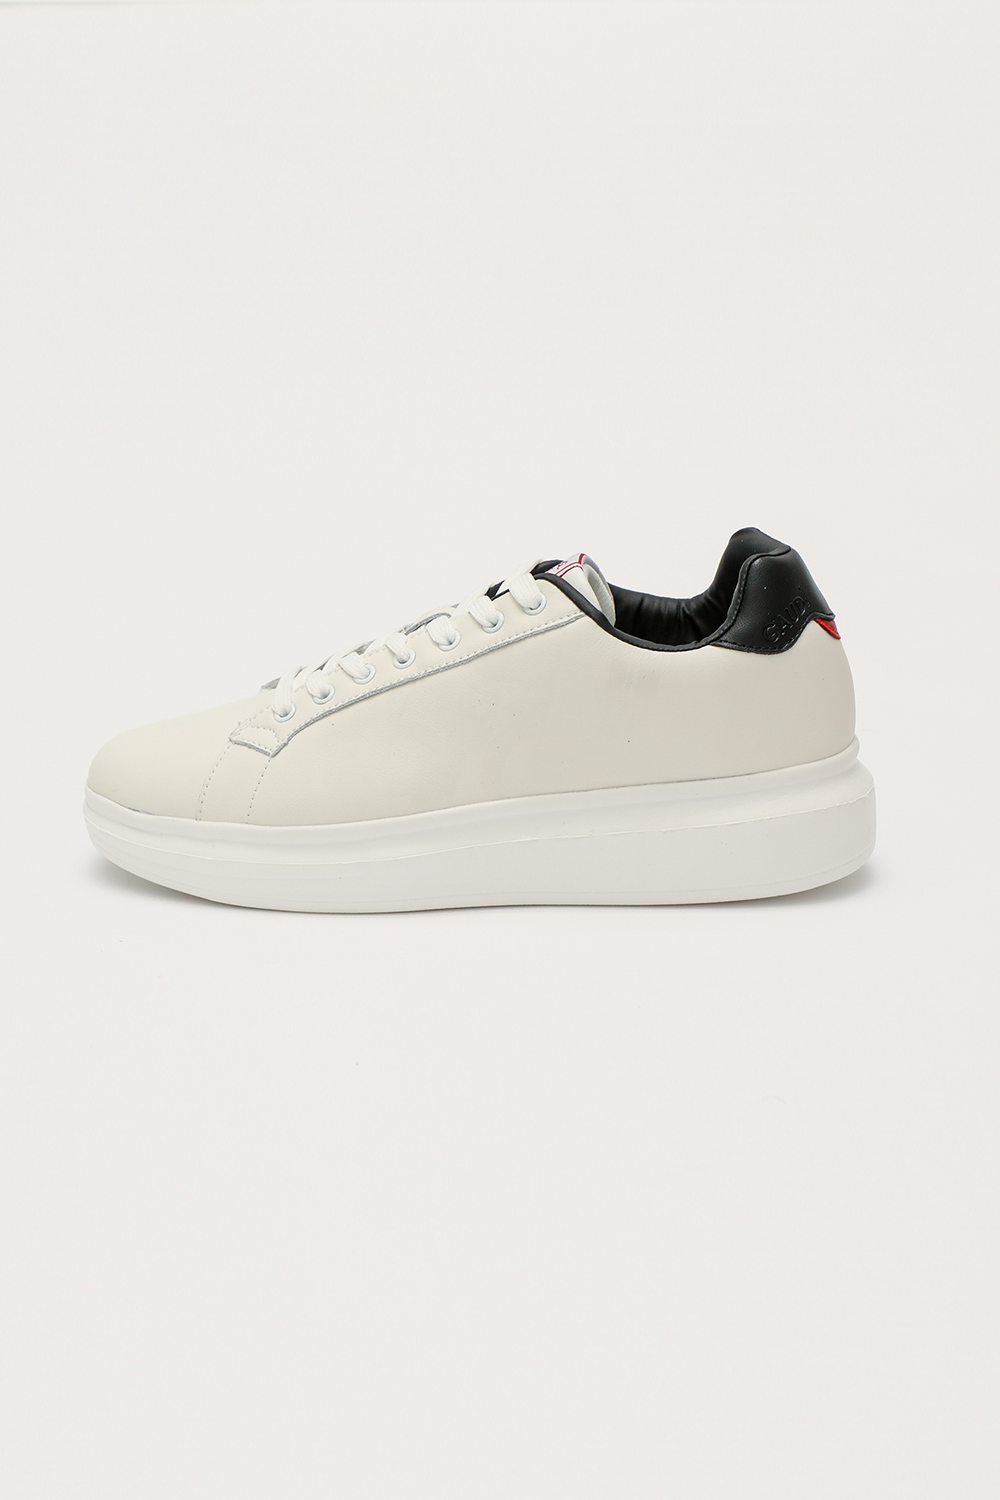 Ανδρικά/Παπούτσια/Sneakers GAUDI - Ανδρικά sneakers GAUDI λευκά